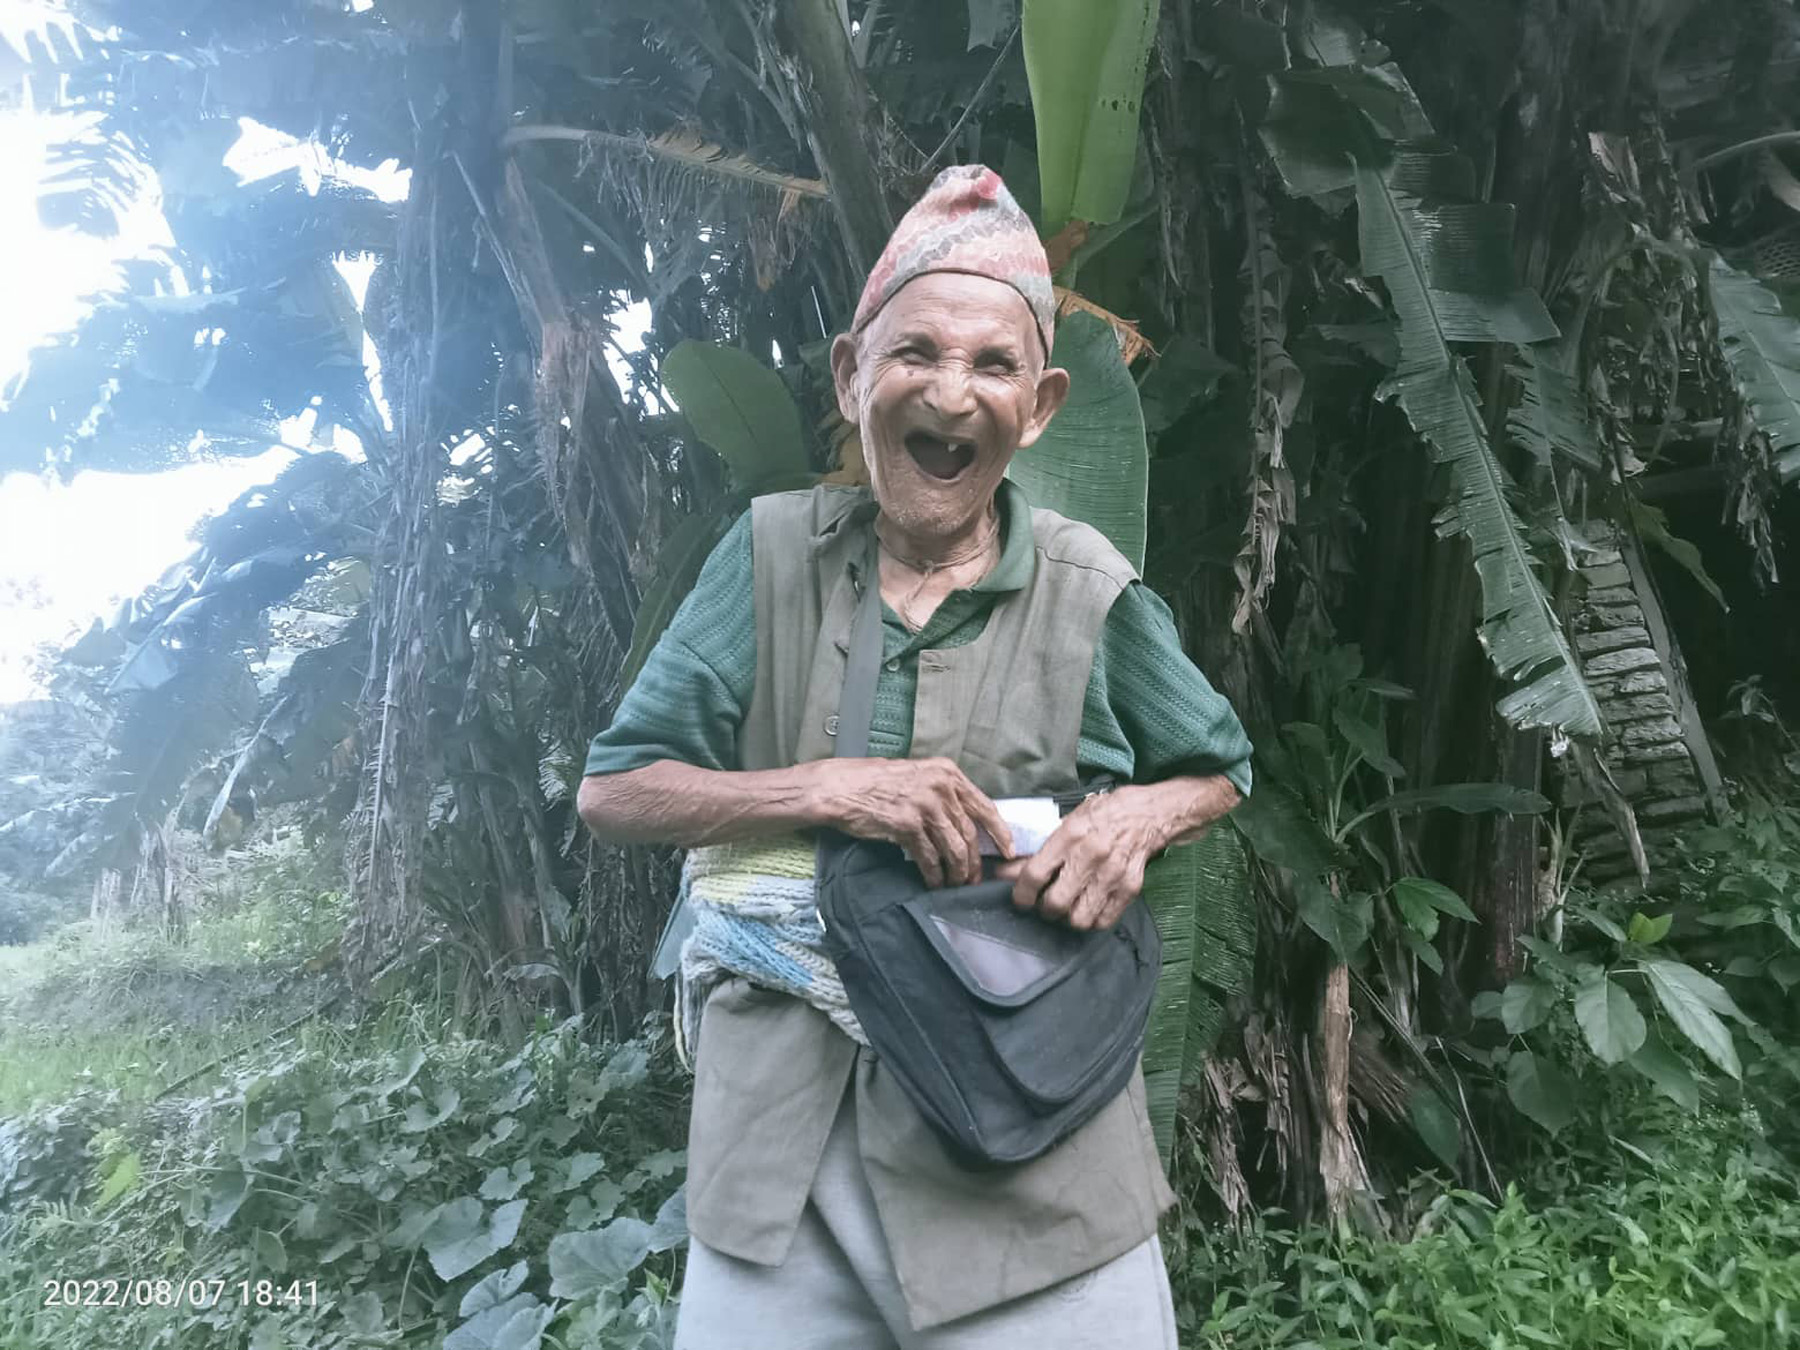 ९७ वर्षीय खड्गबहादुर भन्छन्- ‘रोगले छोएन, दुःखले छोडेन’